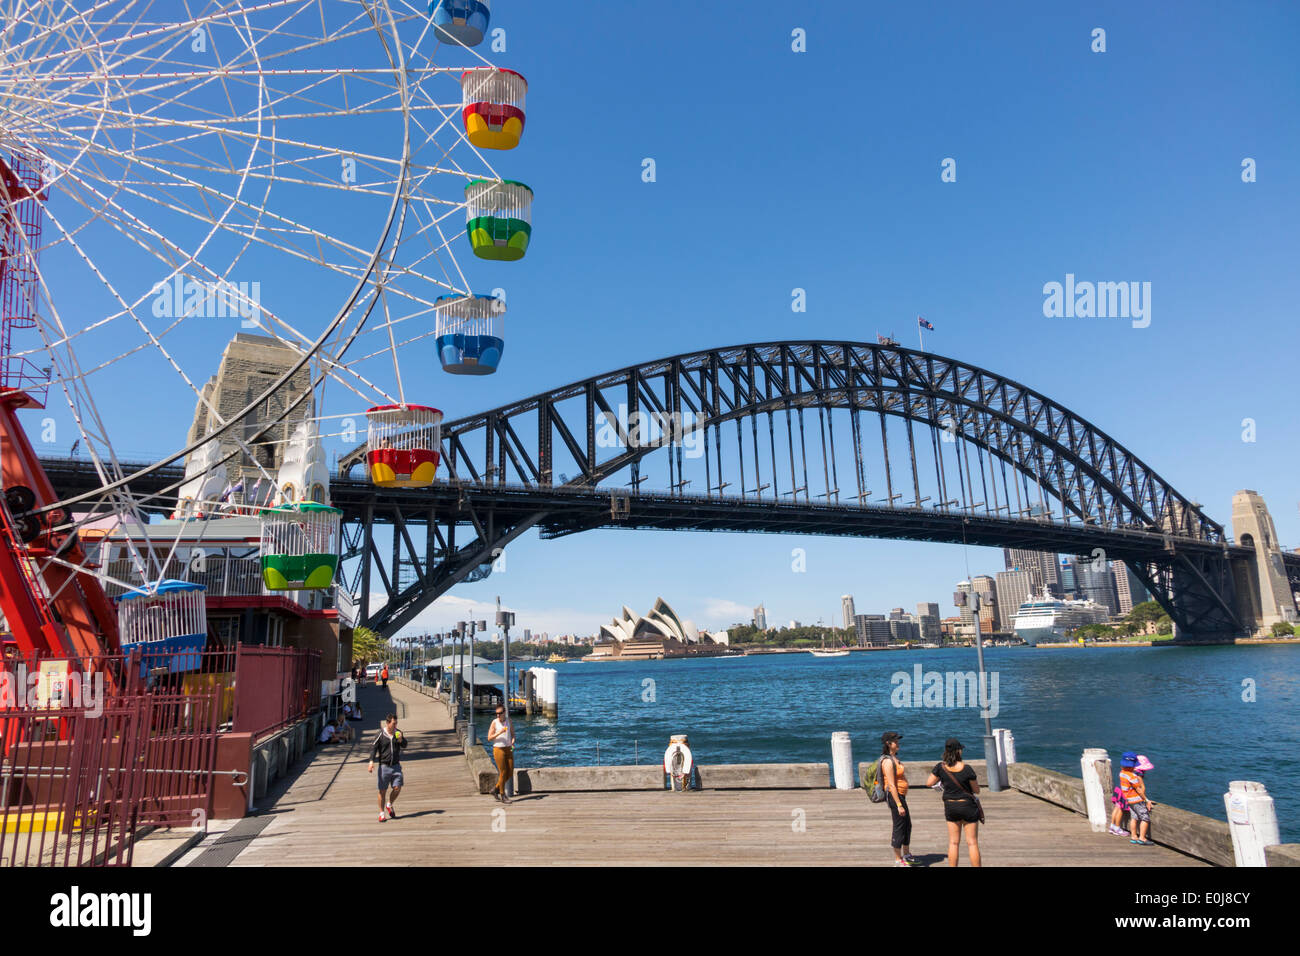 Sydney Australien, Milsons Point, Luna Park, Unterhaltung, Riesenrad, Hafenbrücke, Hafen, Opernhaus, AU140310071 Stockfoto